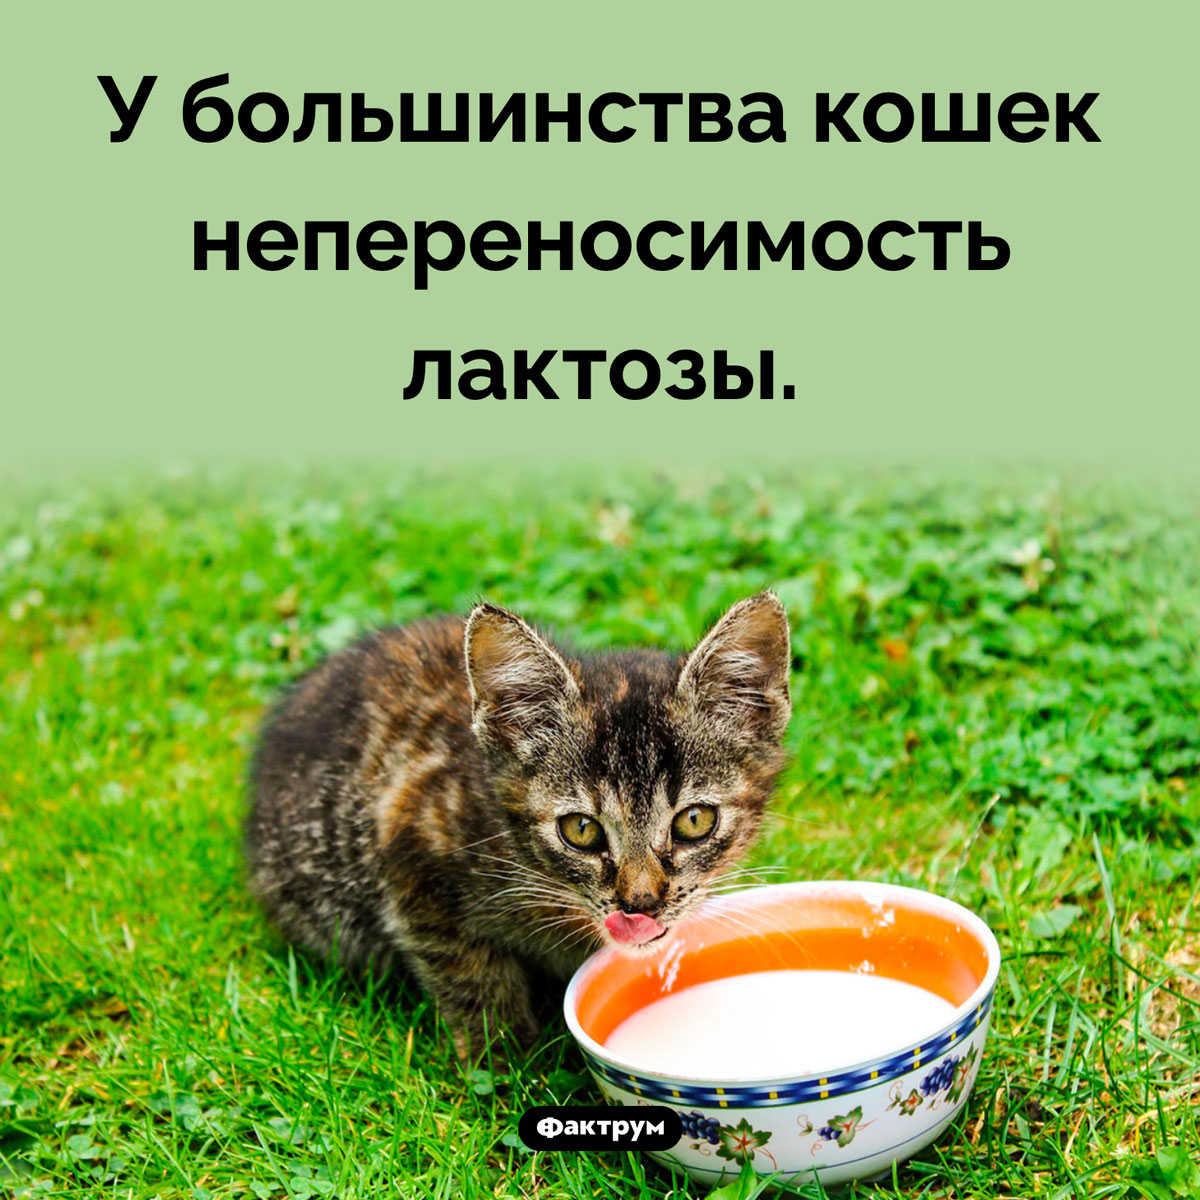 Кошки не переносят молочный сахар. У большинства кошек непереносимость лактозы.